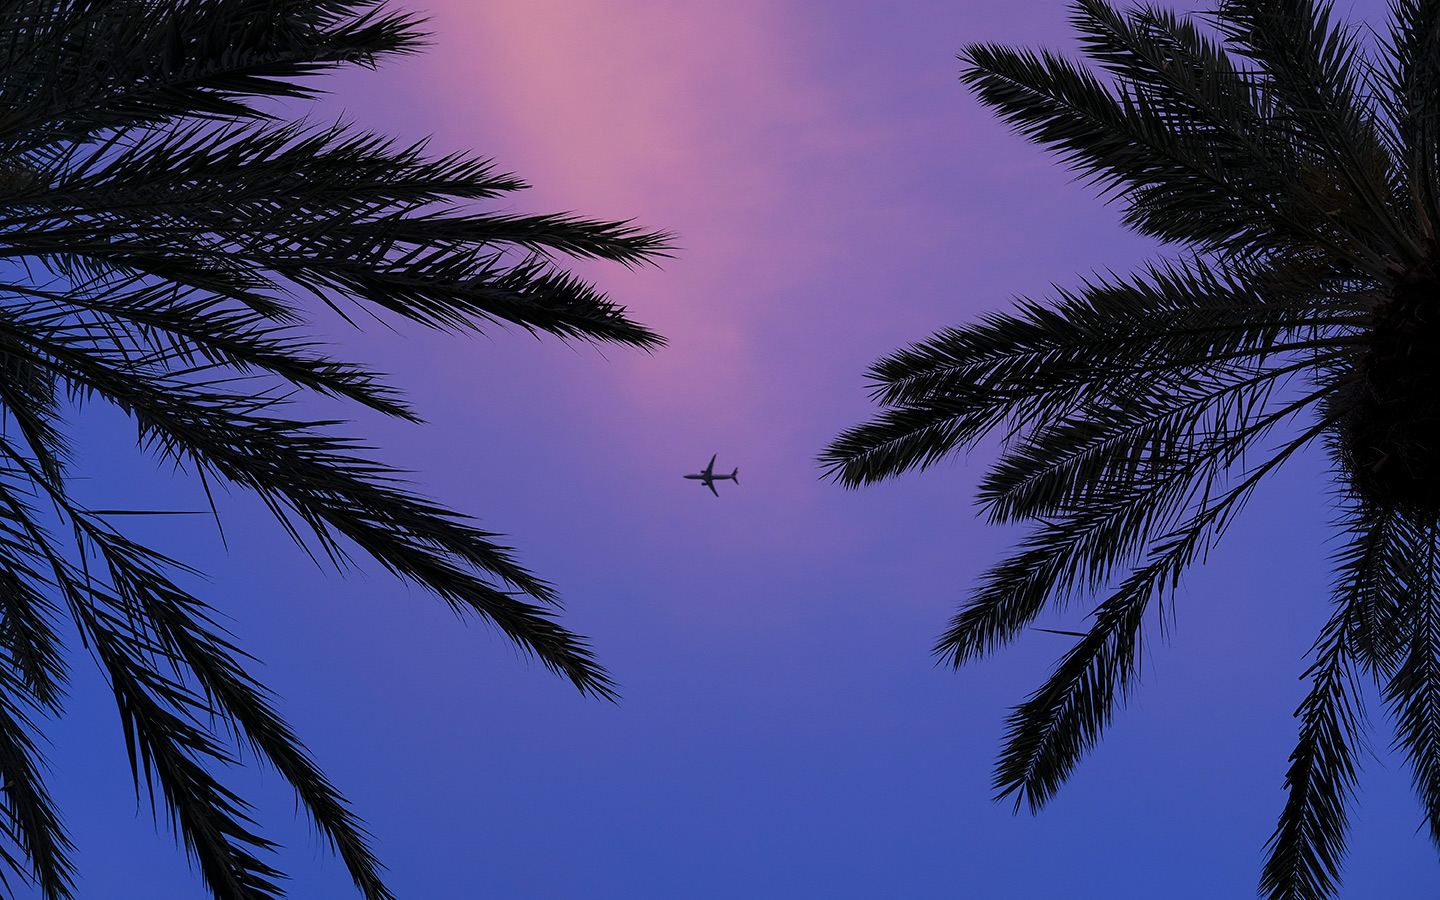 Aeroplano che vola in cieli rosa e viola tra due palme